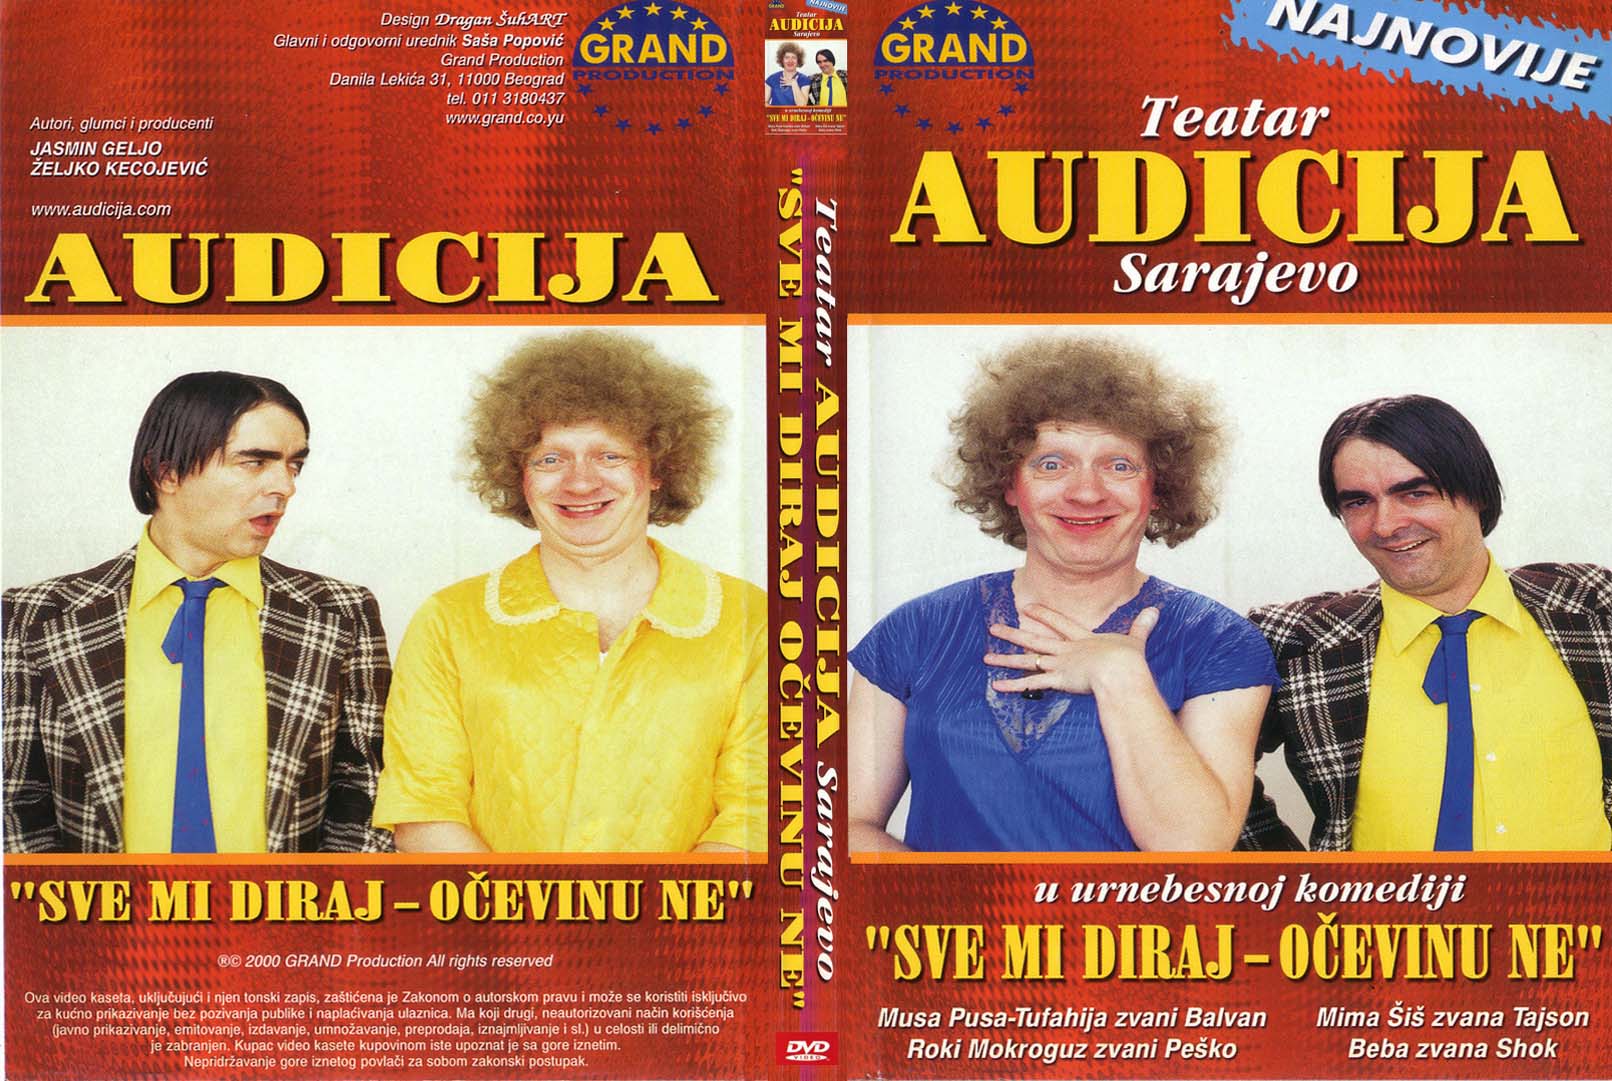 Click to view full size image -  DVD Cover - A - audicija_sve_mi_diraj_ocevinu_ne_dvd - audicija_sve_mi_diraj_ocevinu_ne_dvd.JPG